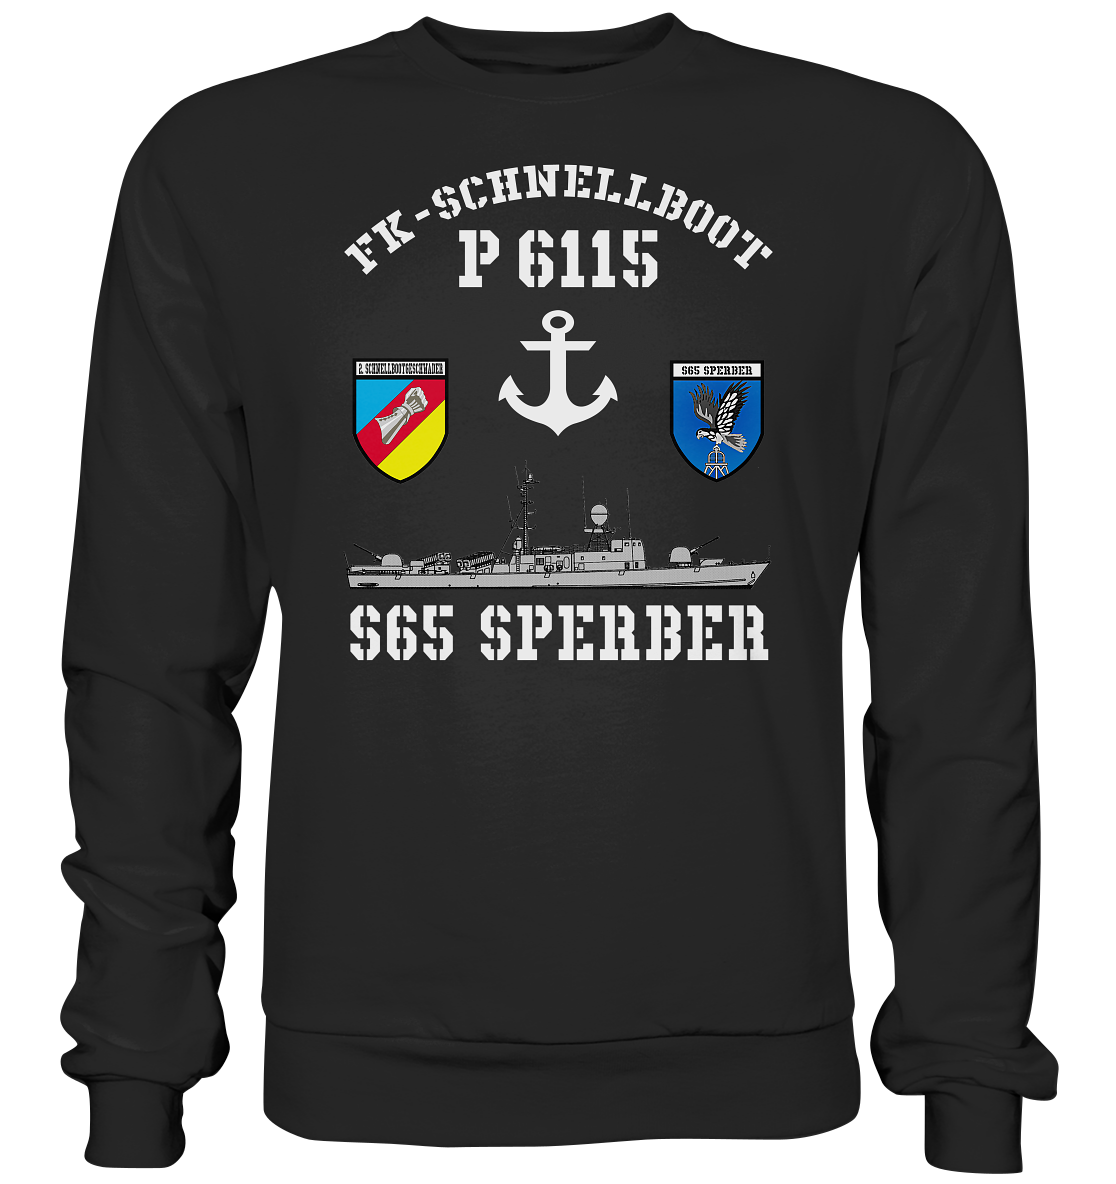 FK-Schnellboot P6115 SPERBER 2.SG Anker - Premium Sweatshirt